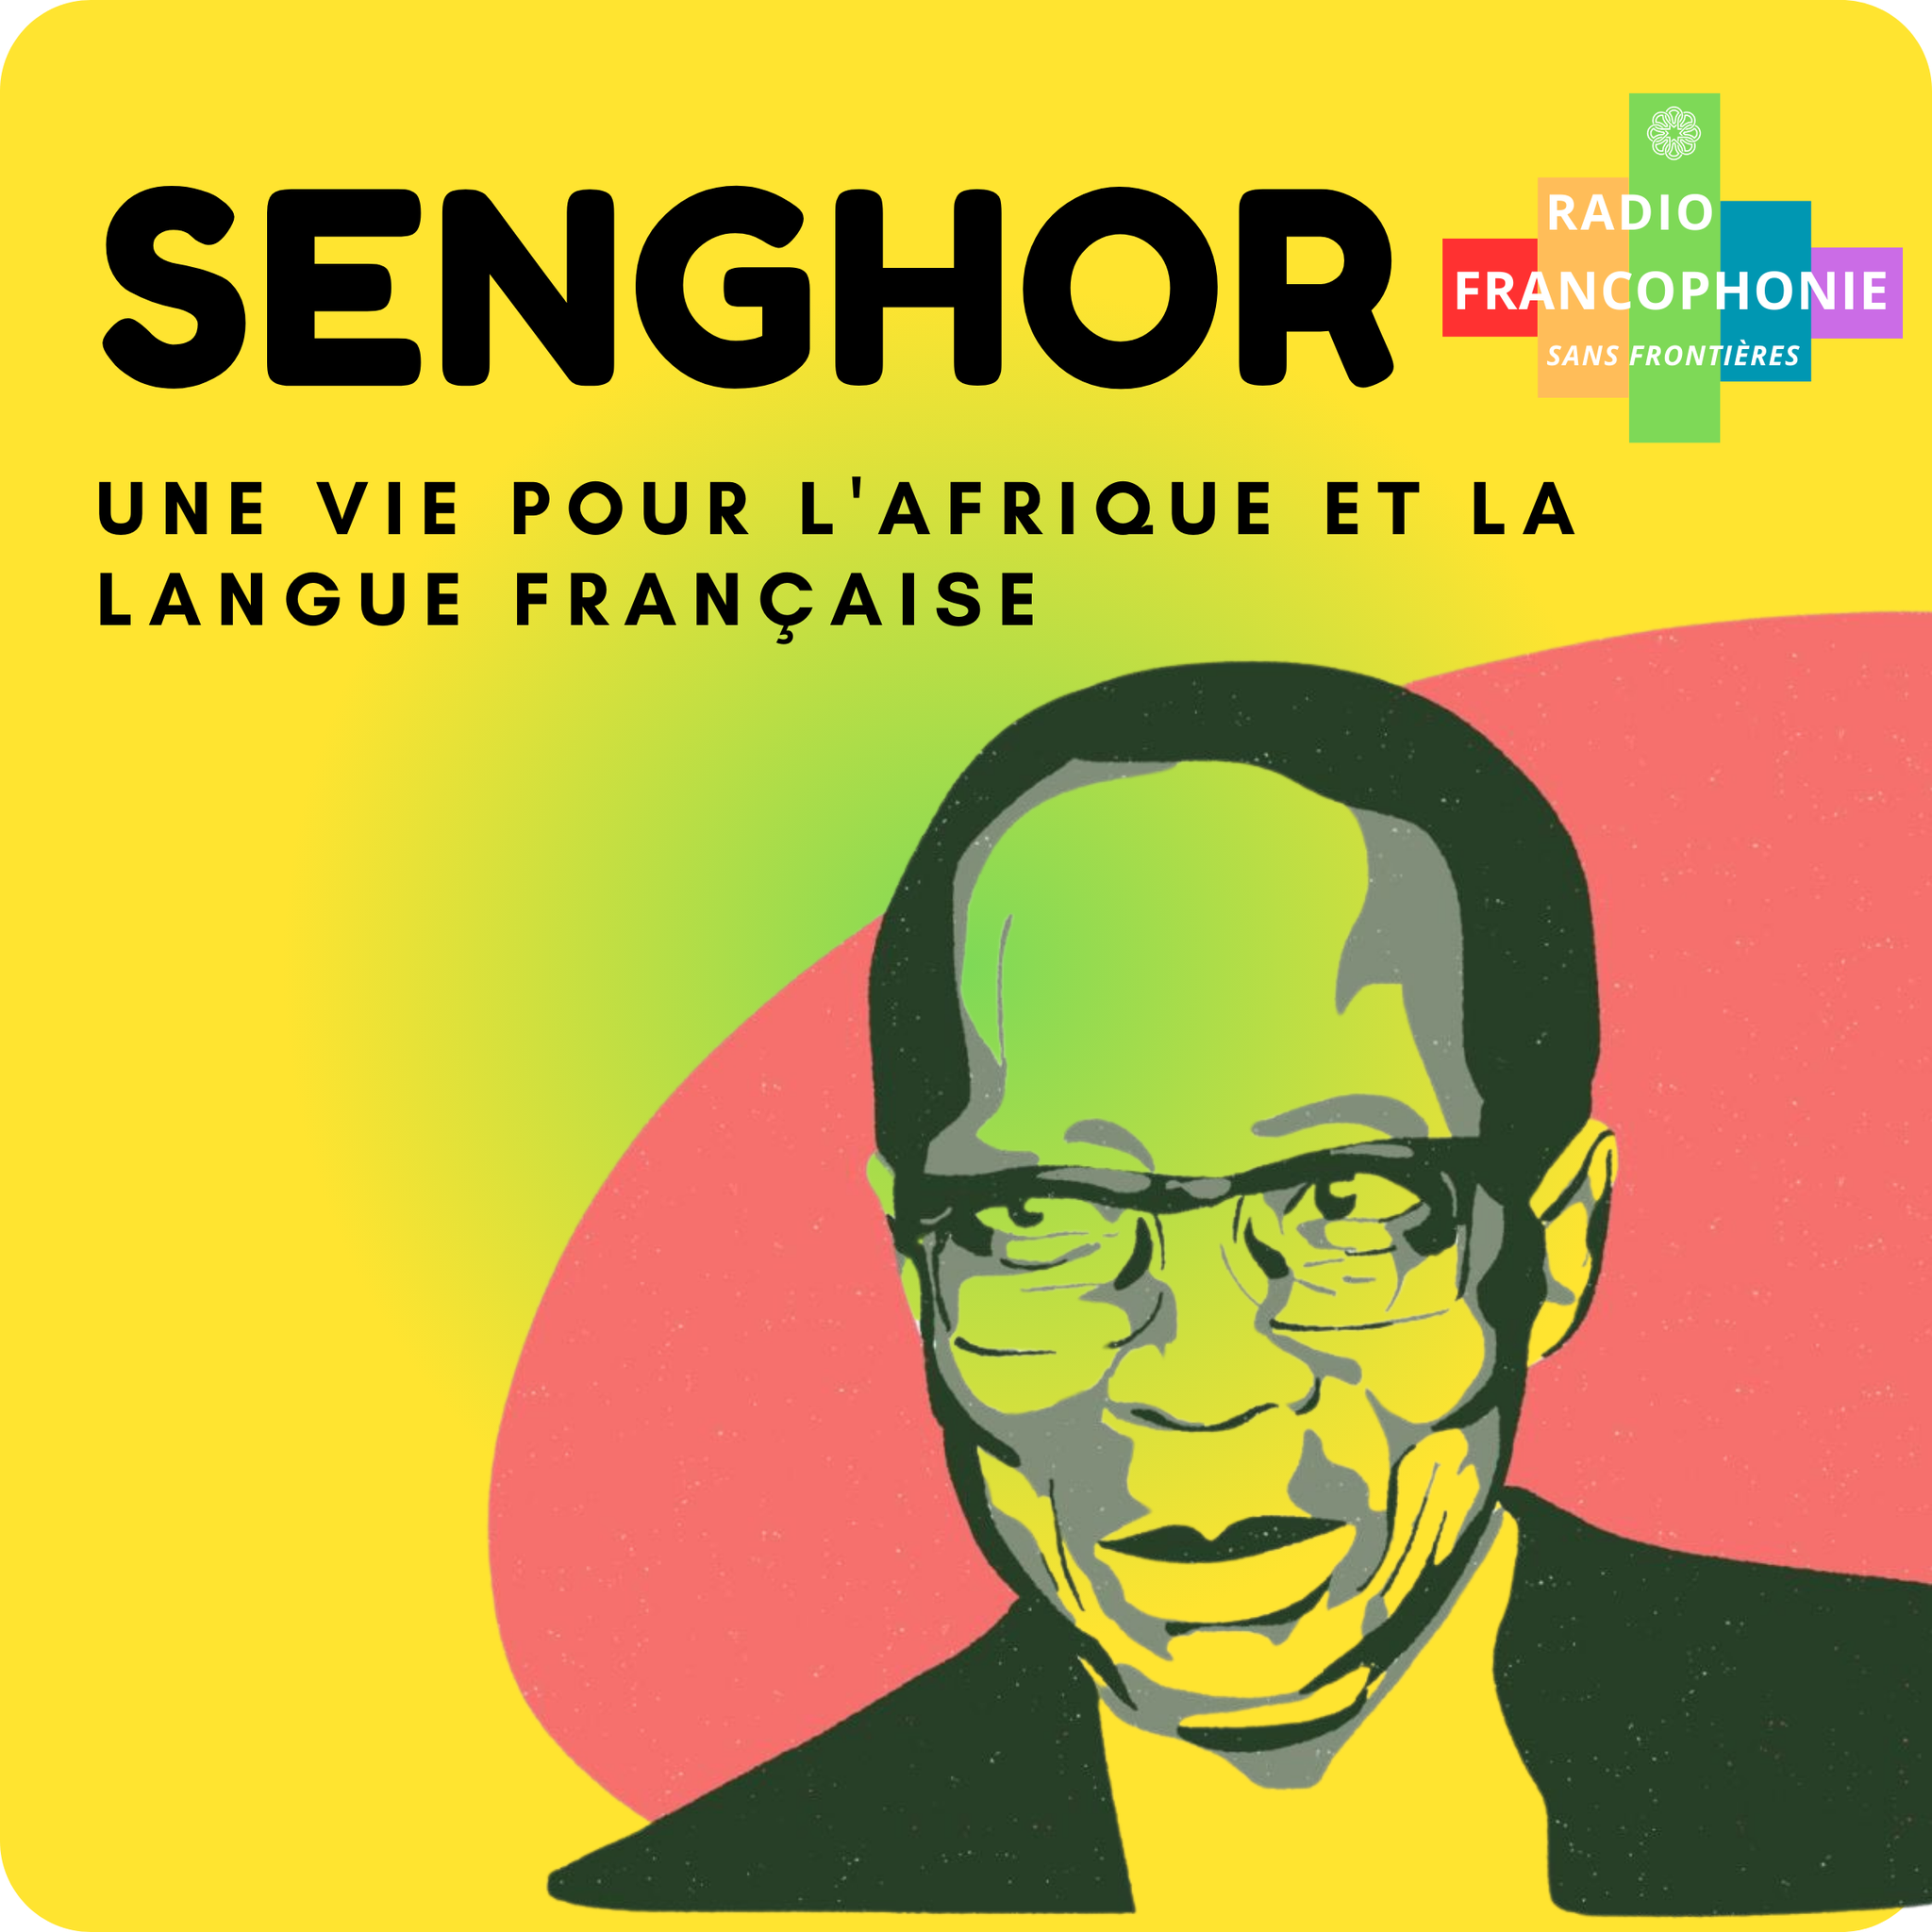 https://www.podcastics.com/podcast/radio-francophonie-sans-frontieres-fsf/series/senghor-une-vie-pour-lafrique-et-le-francais/